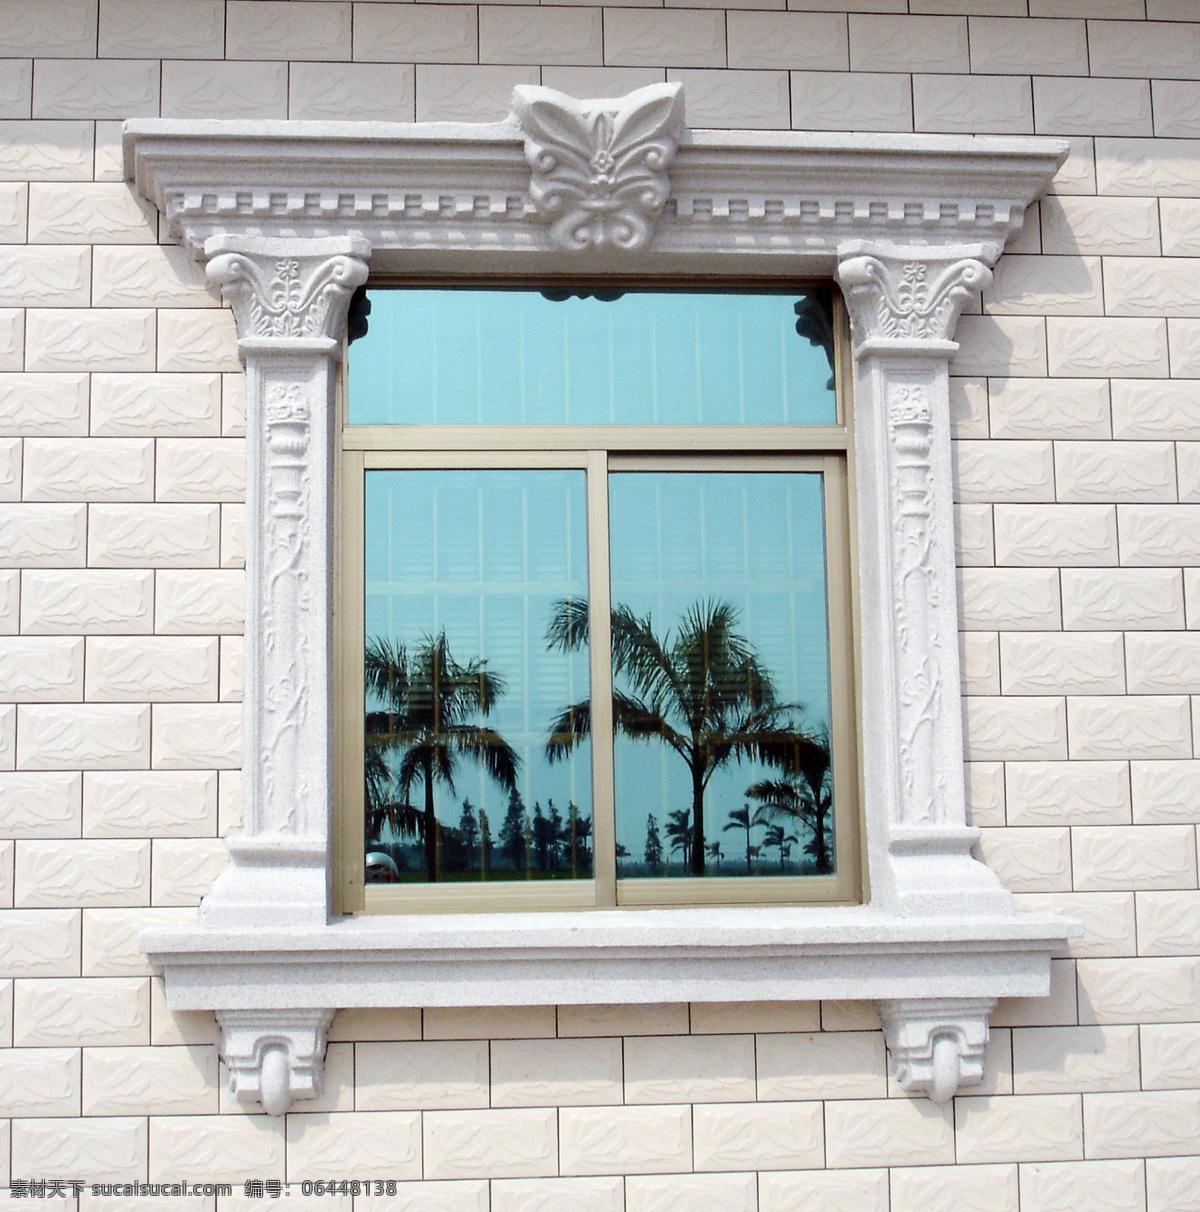 石膏窗 铝合金窗 jpg摄影图 建筑摄影 建筑园林